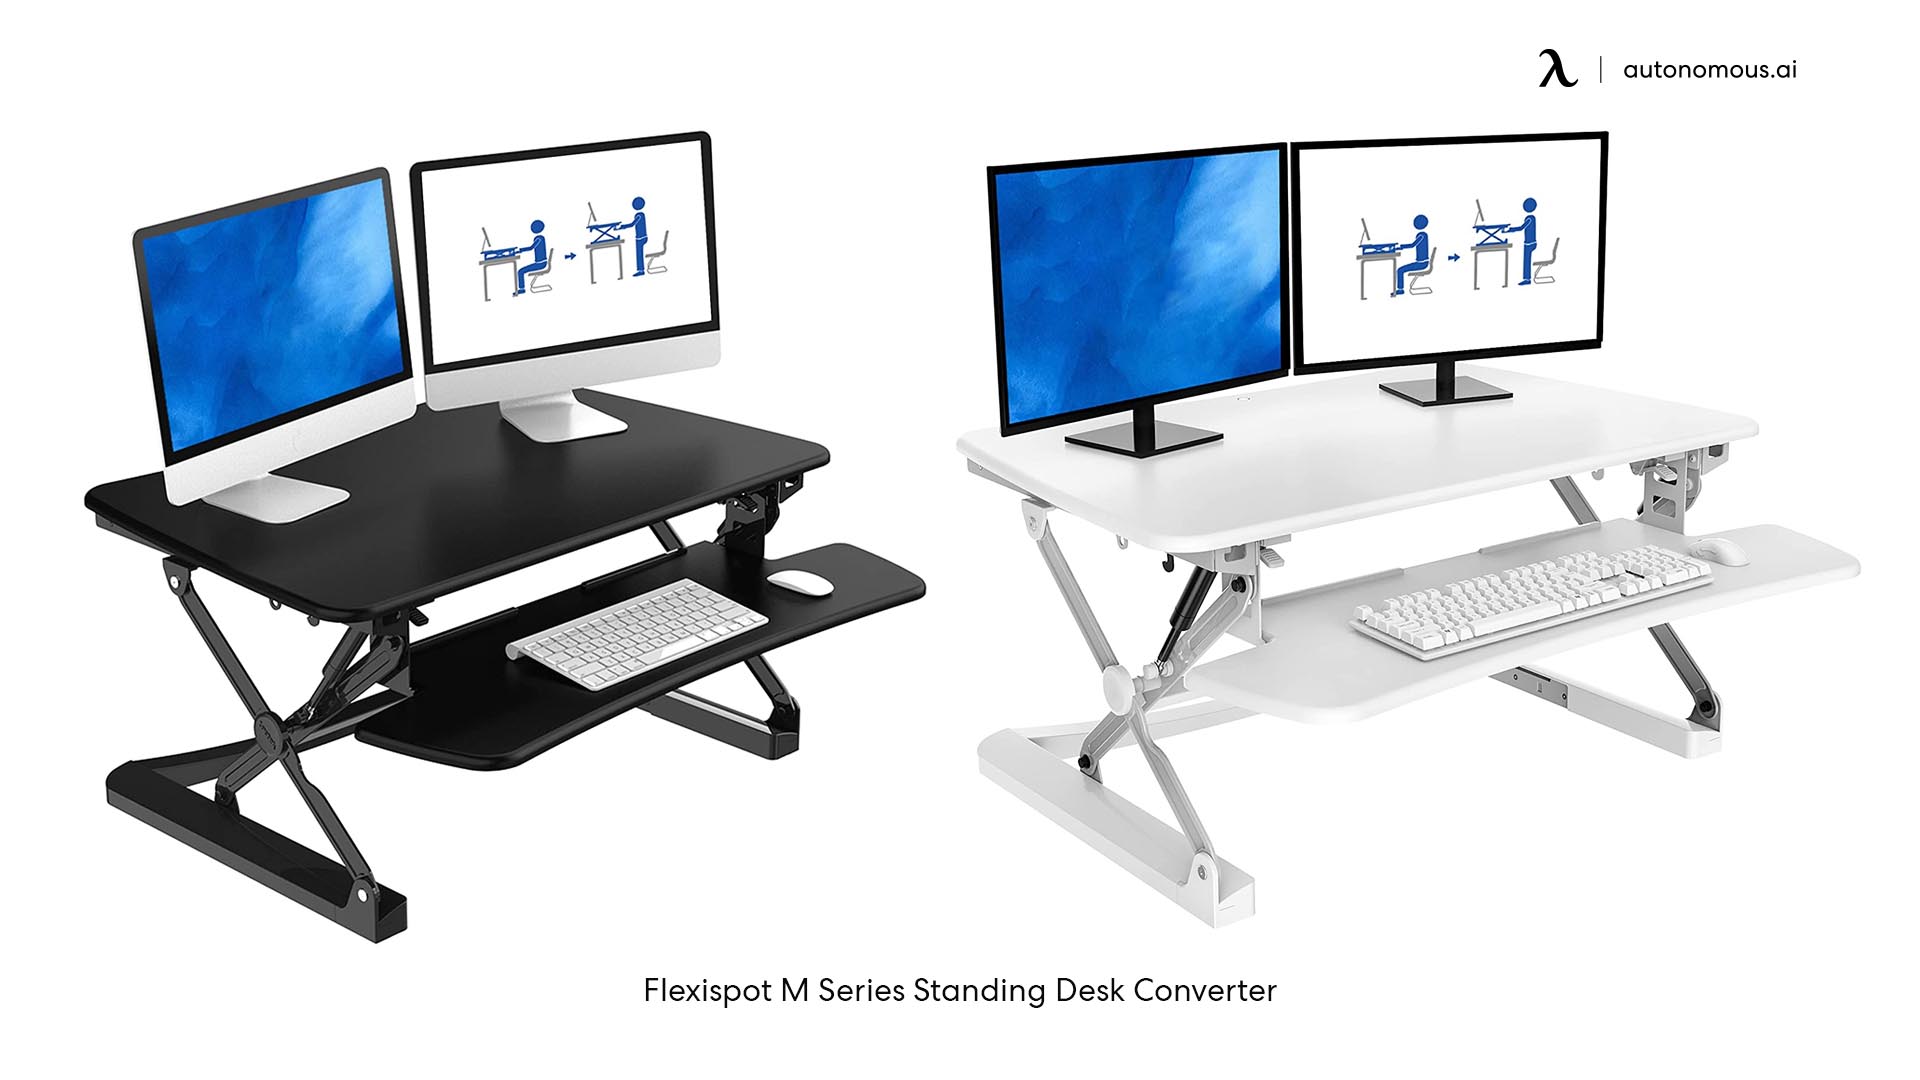 Flexispot M Series Standing Desk Converter